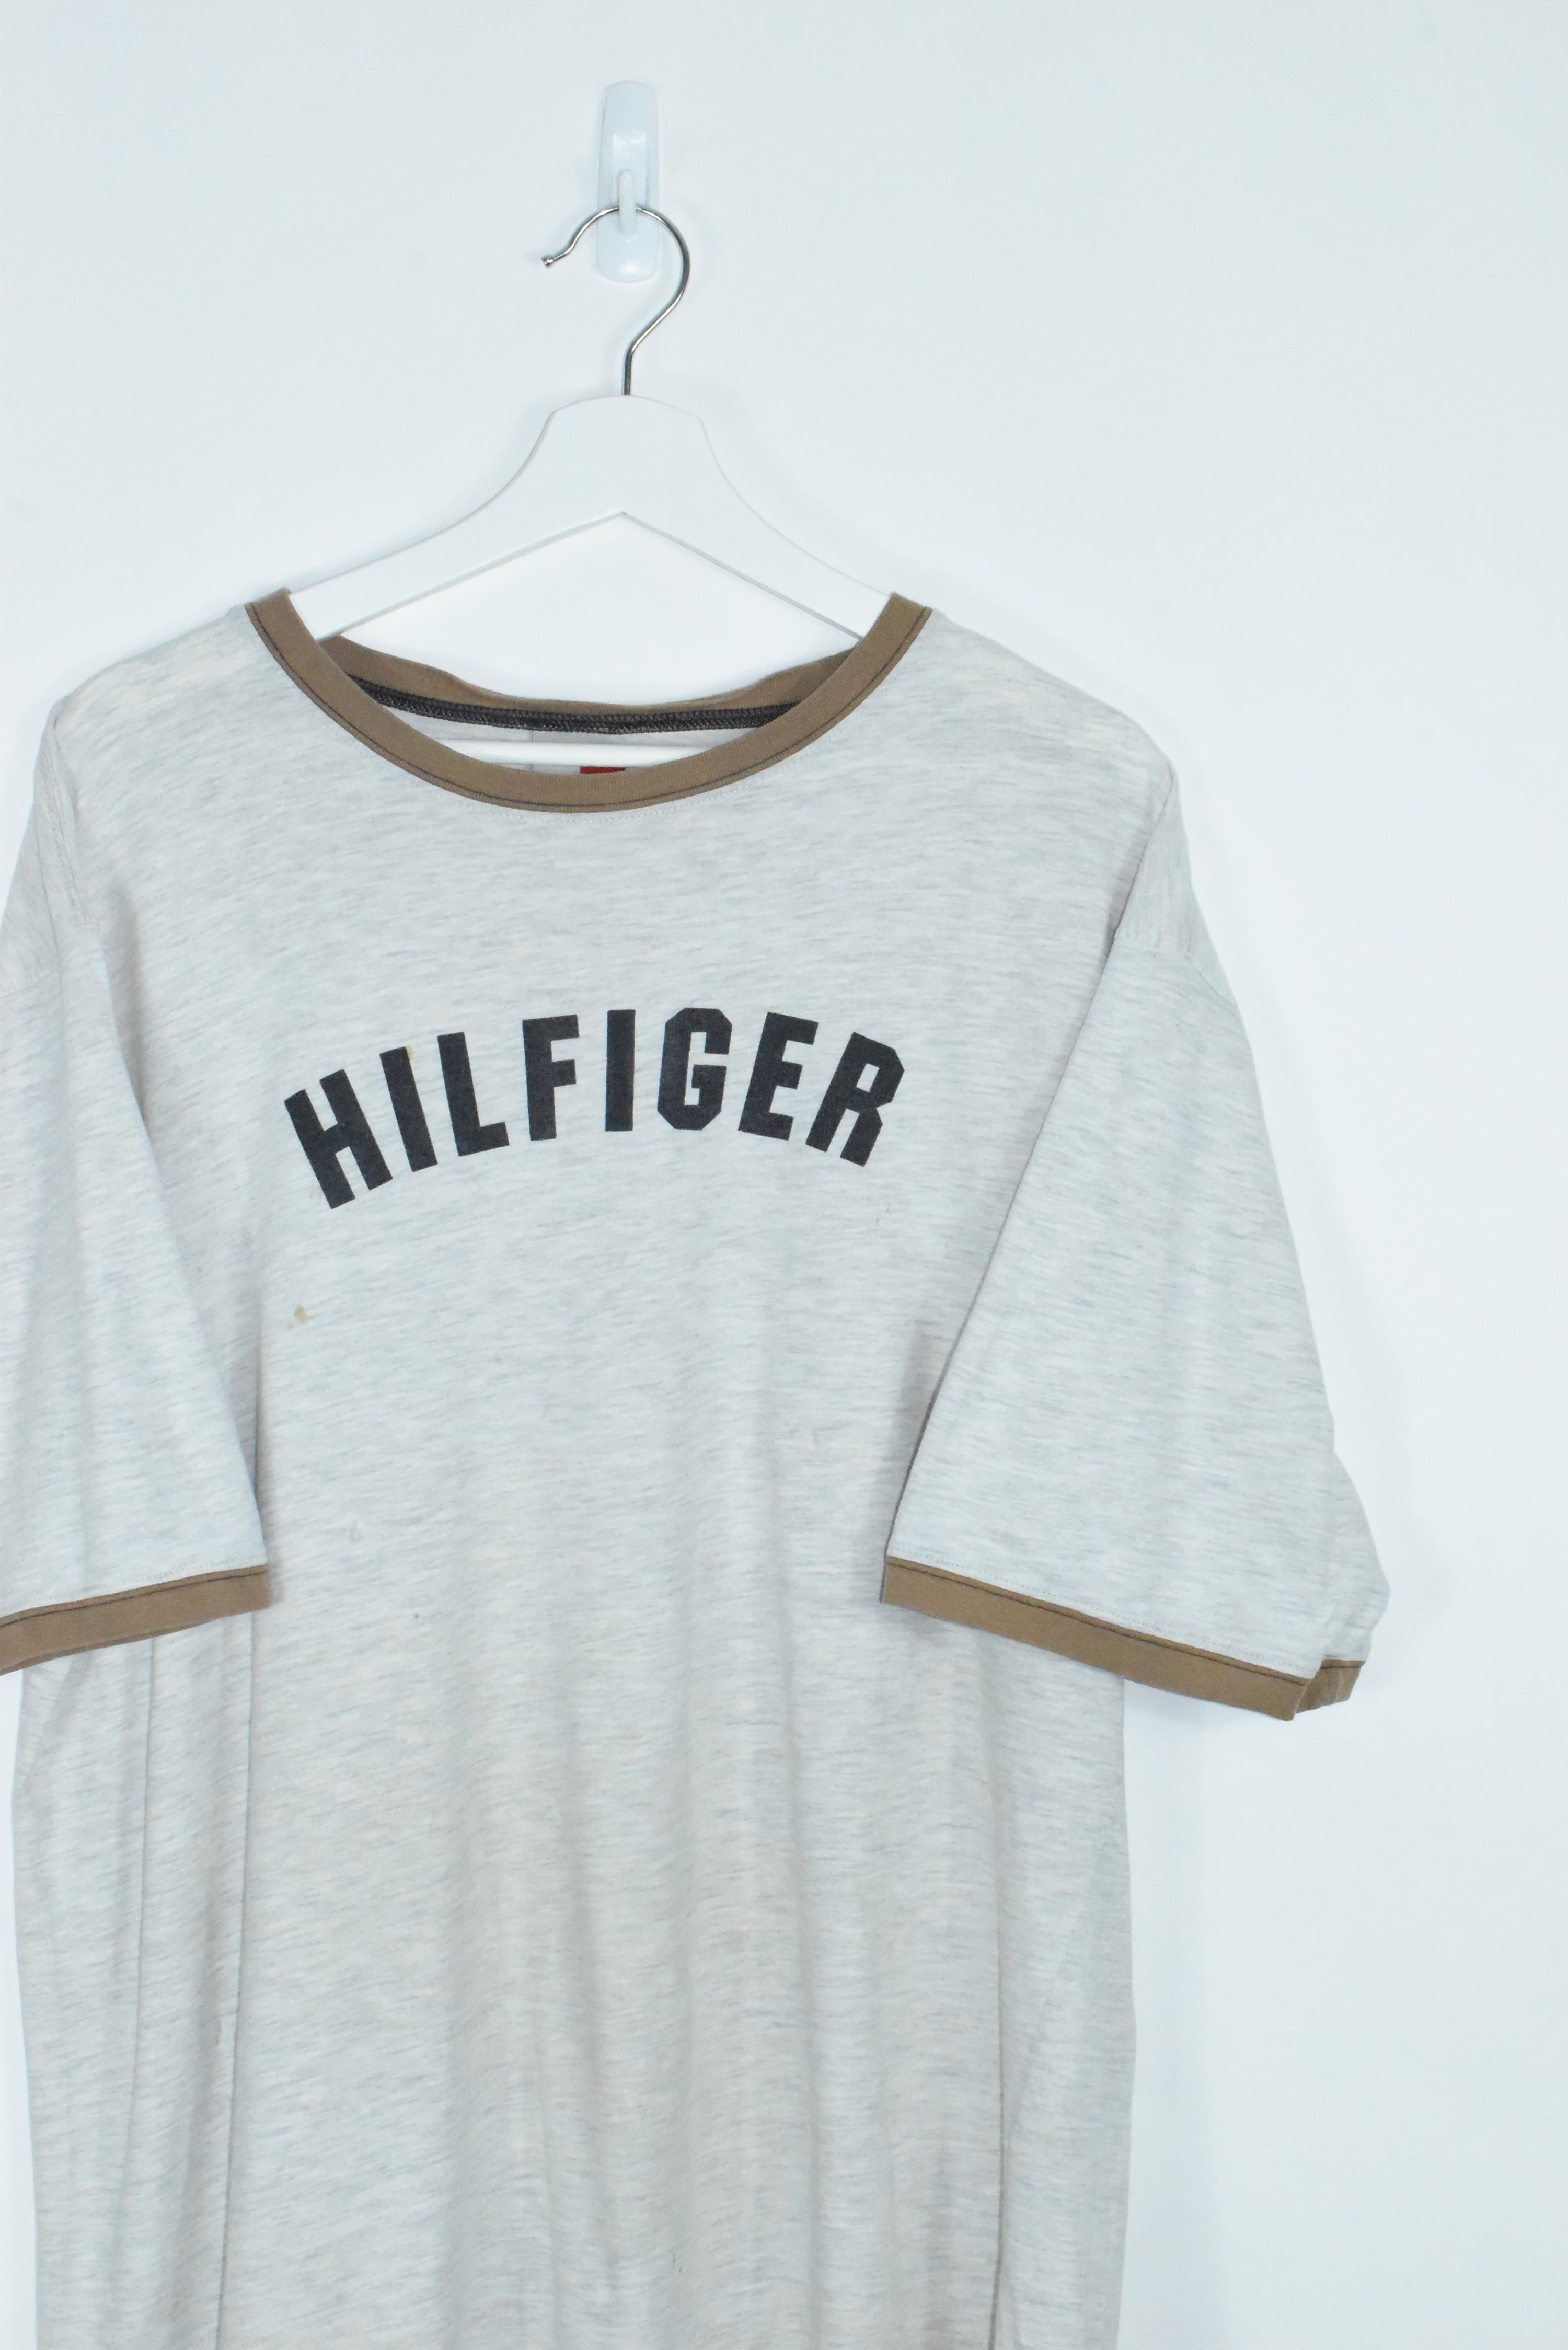 Vintage Tommy Hilfiger T Shirt XLARGE